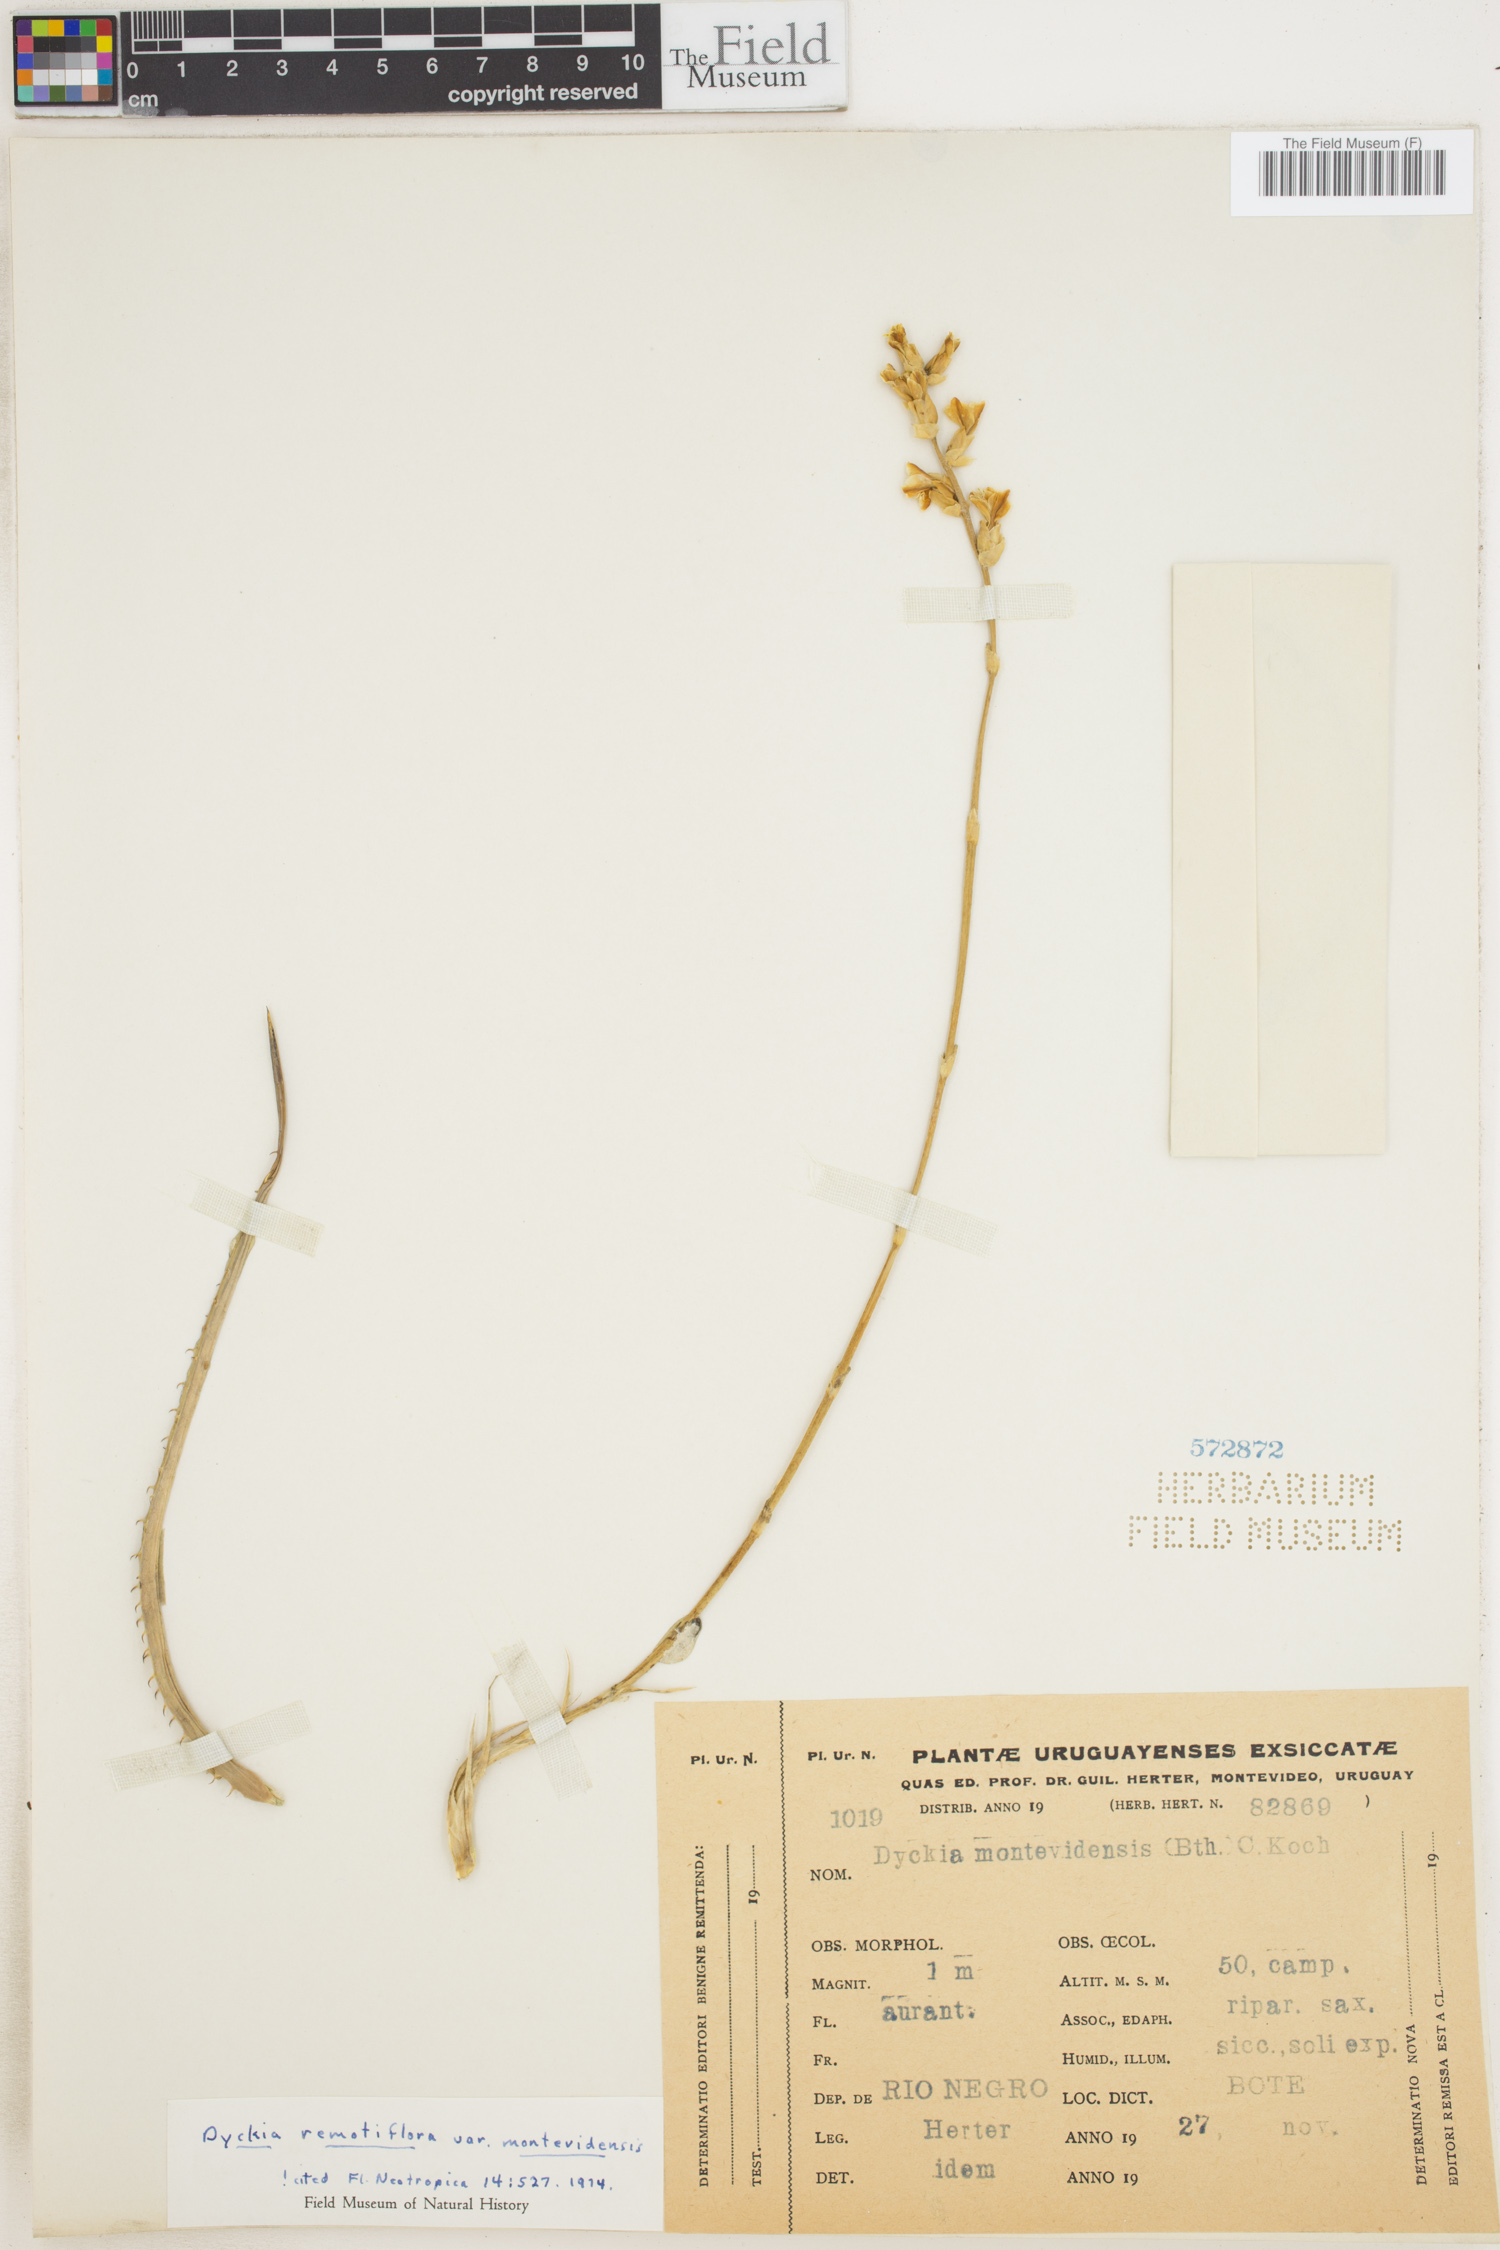 Dyckia remotiflora var. montevidensis image